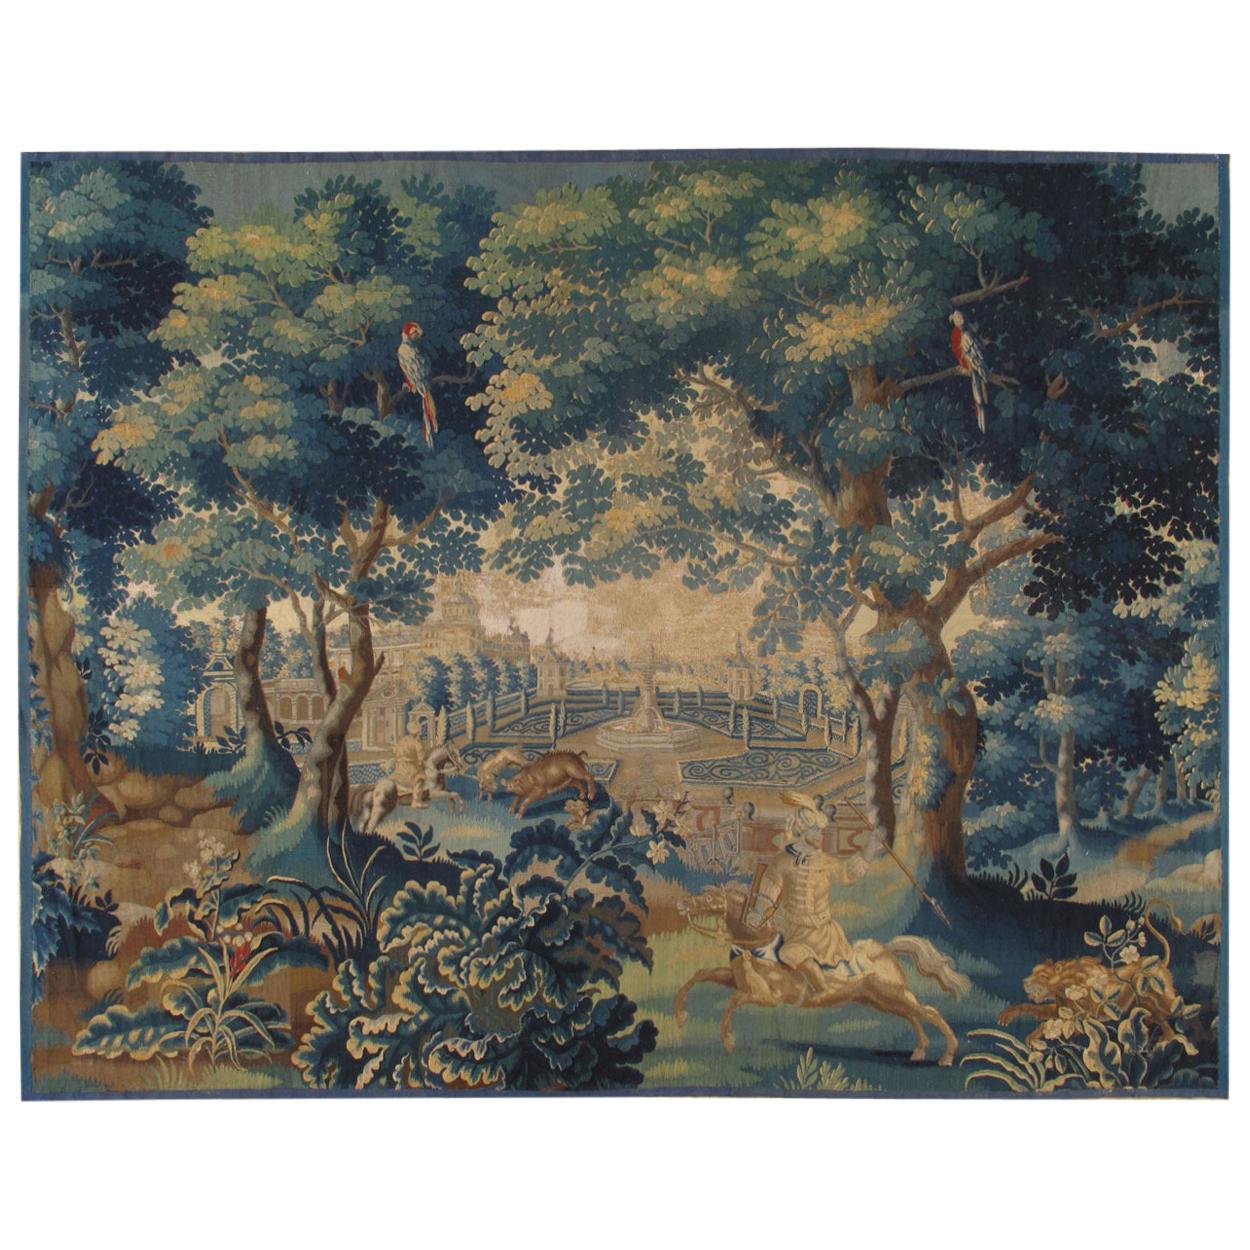 Tapisserie bruxelloise du 18ème siècle, laine de soie, vert, bleu, thème mythologique